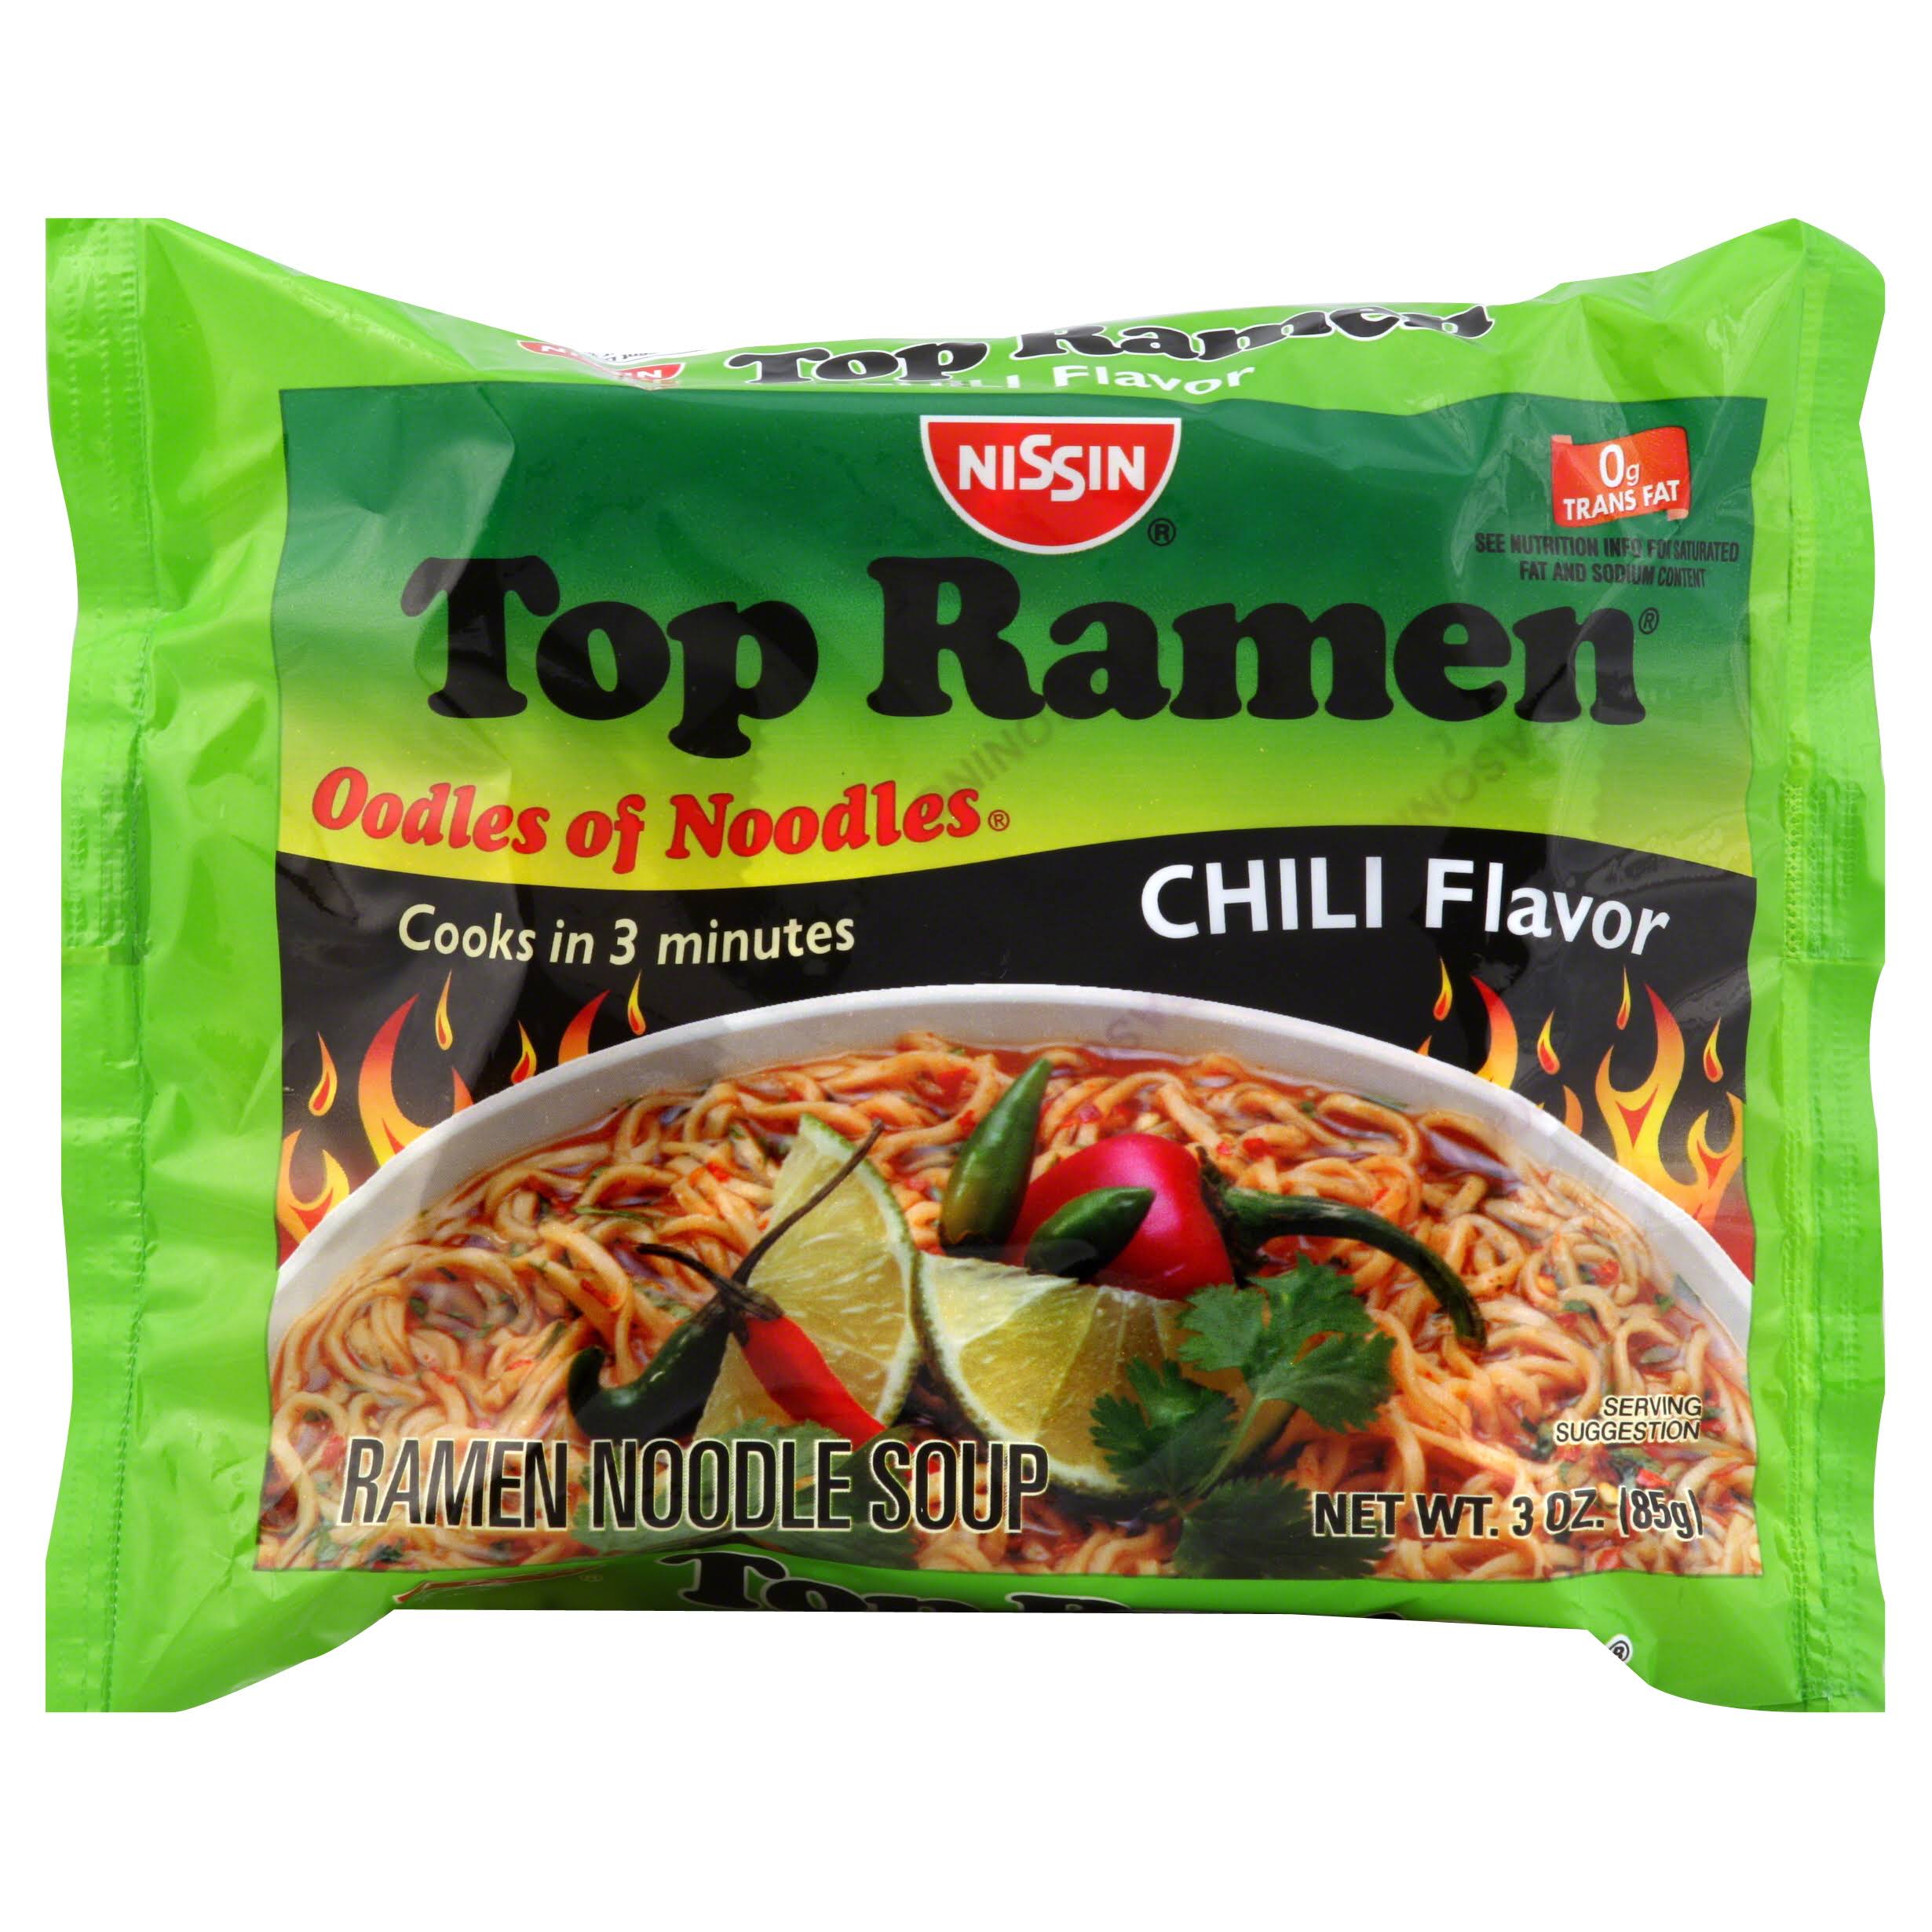 Nissin Top Ramen Noodle Soup - Chili Flavor, 3oz, 24ct